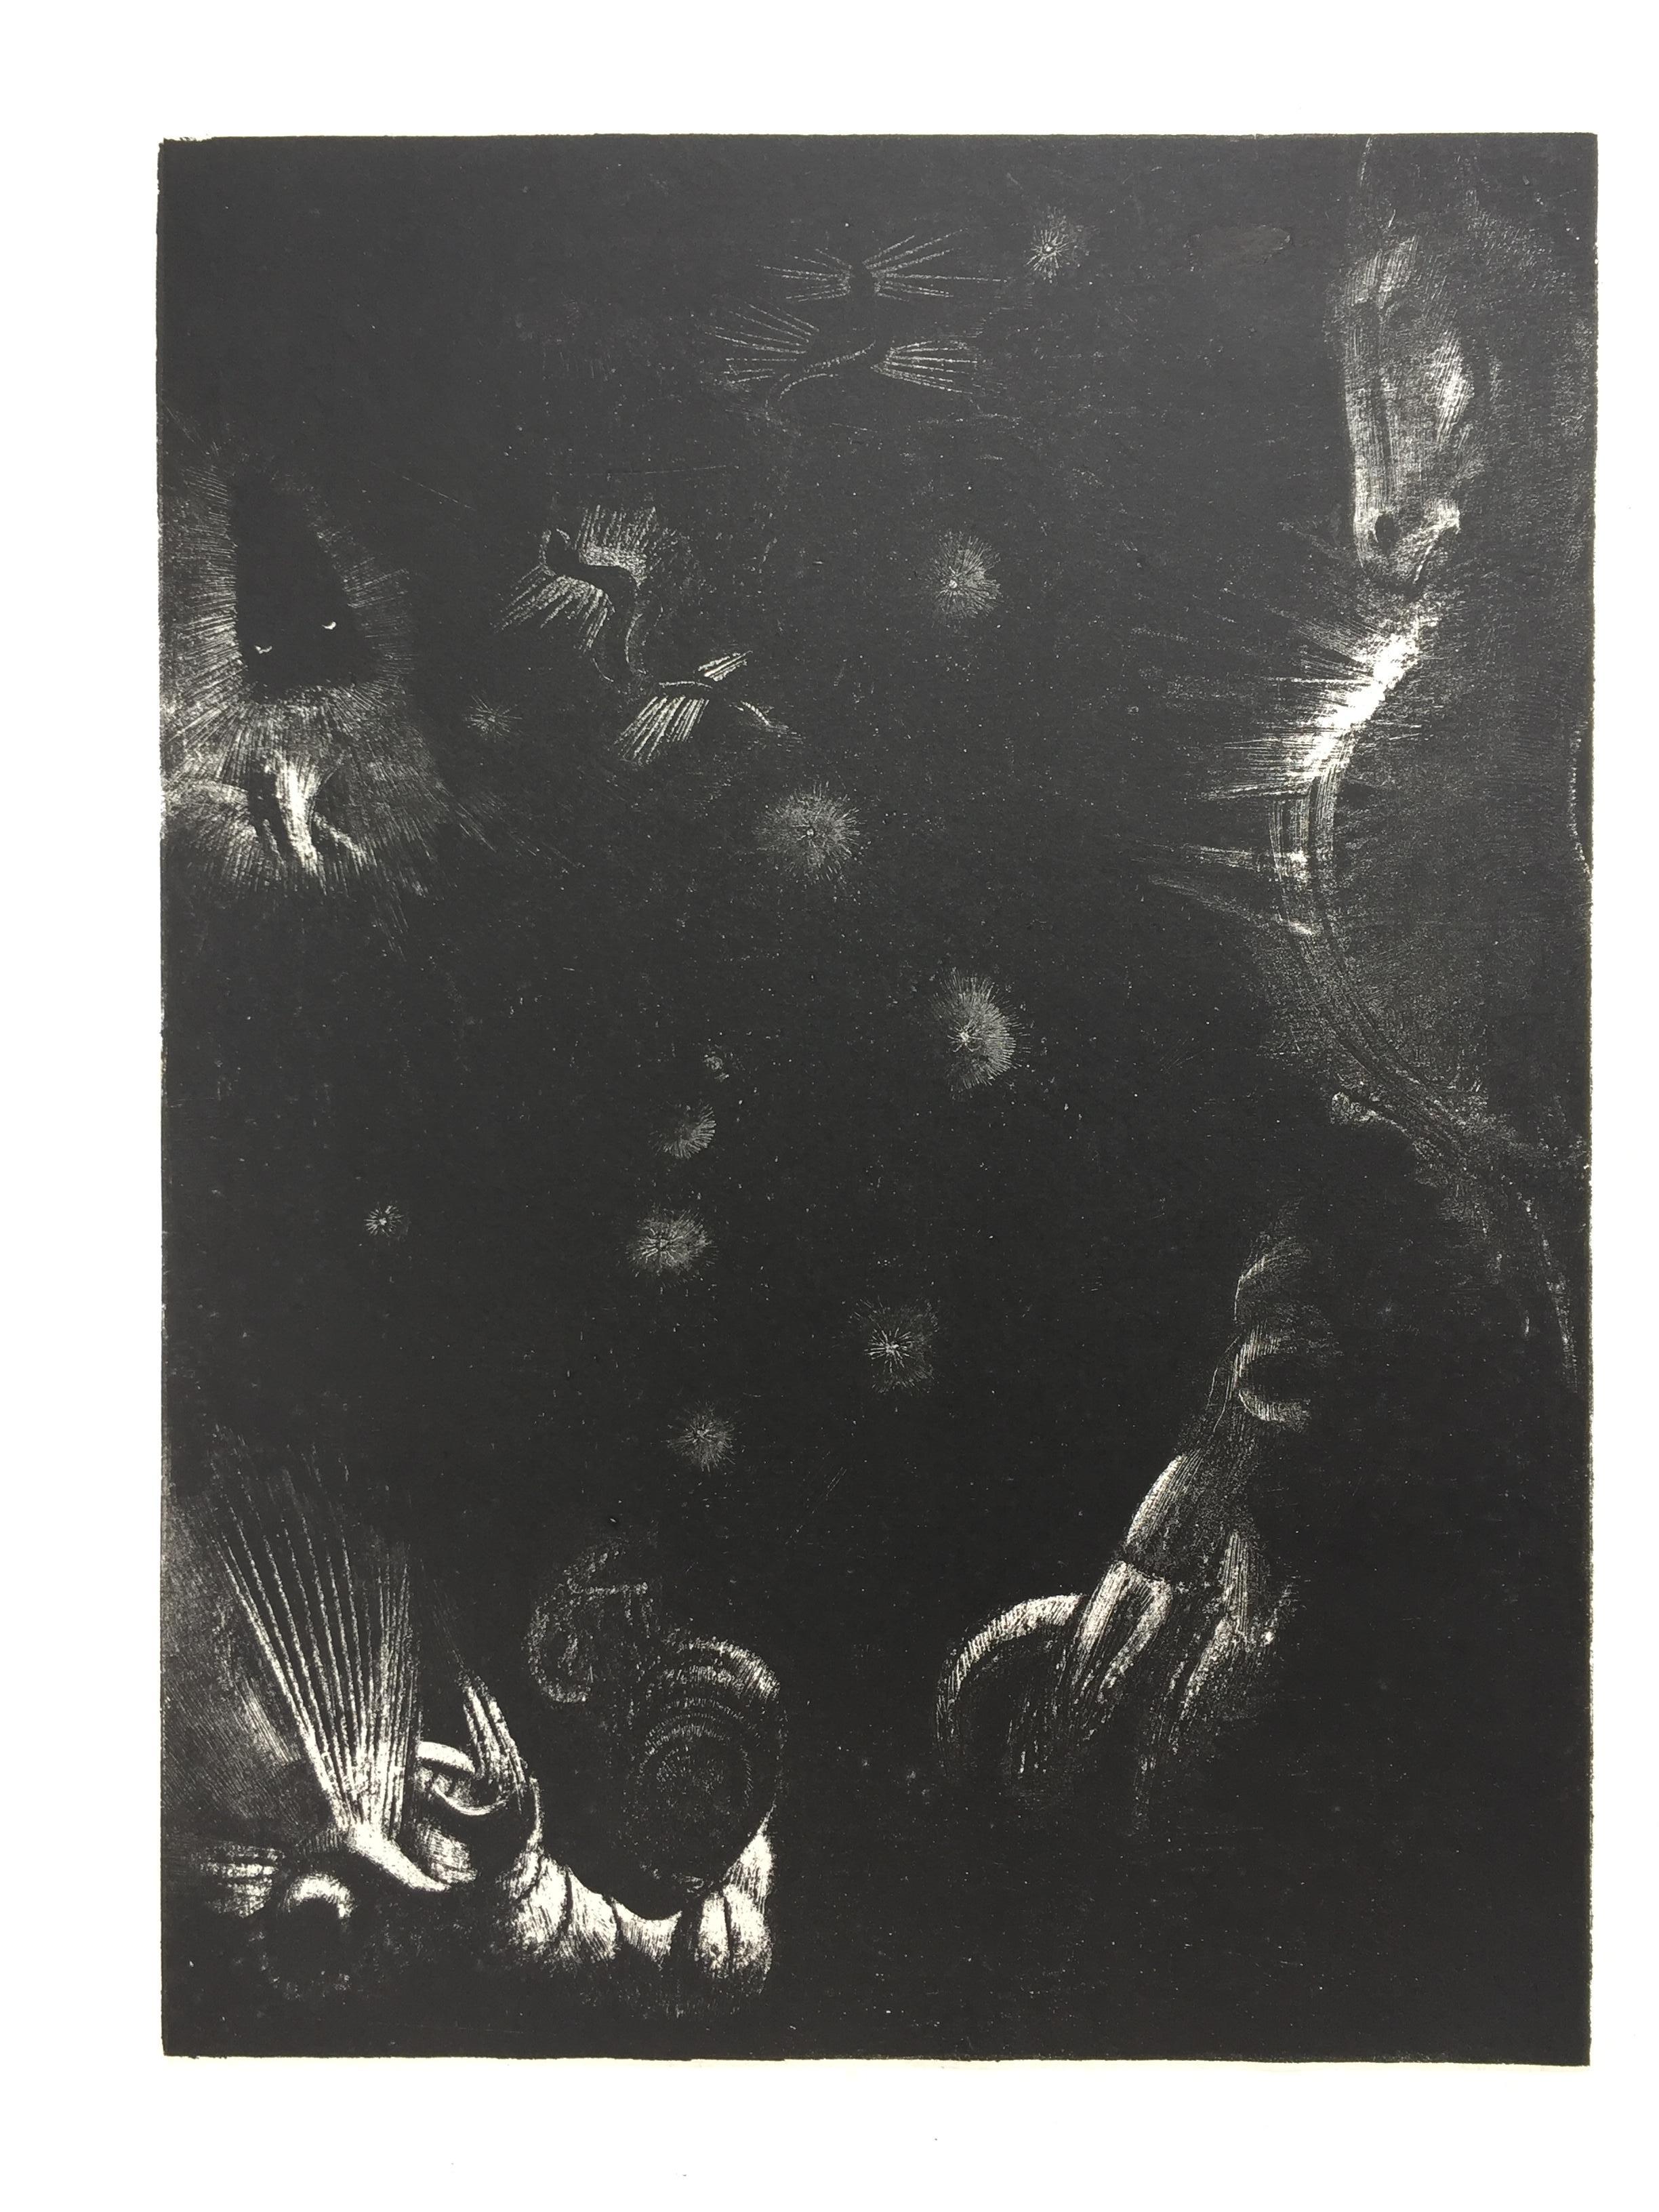 DES PEUPLES DIVERS HABITENT, LES PAYS DE L’OCEAN - Symbolist Print by Odilon Redon